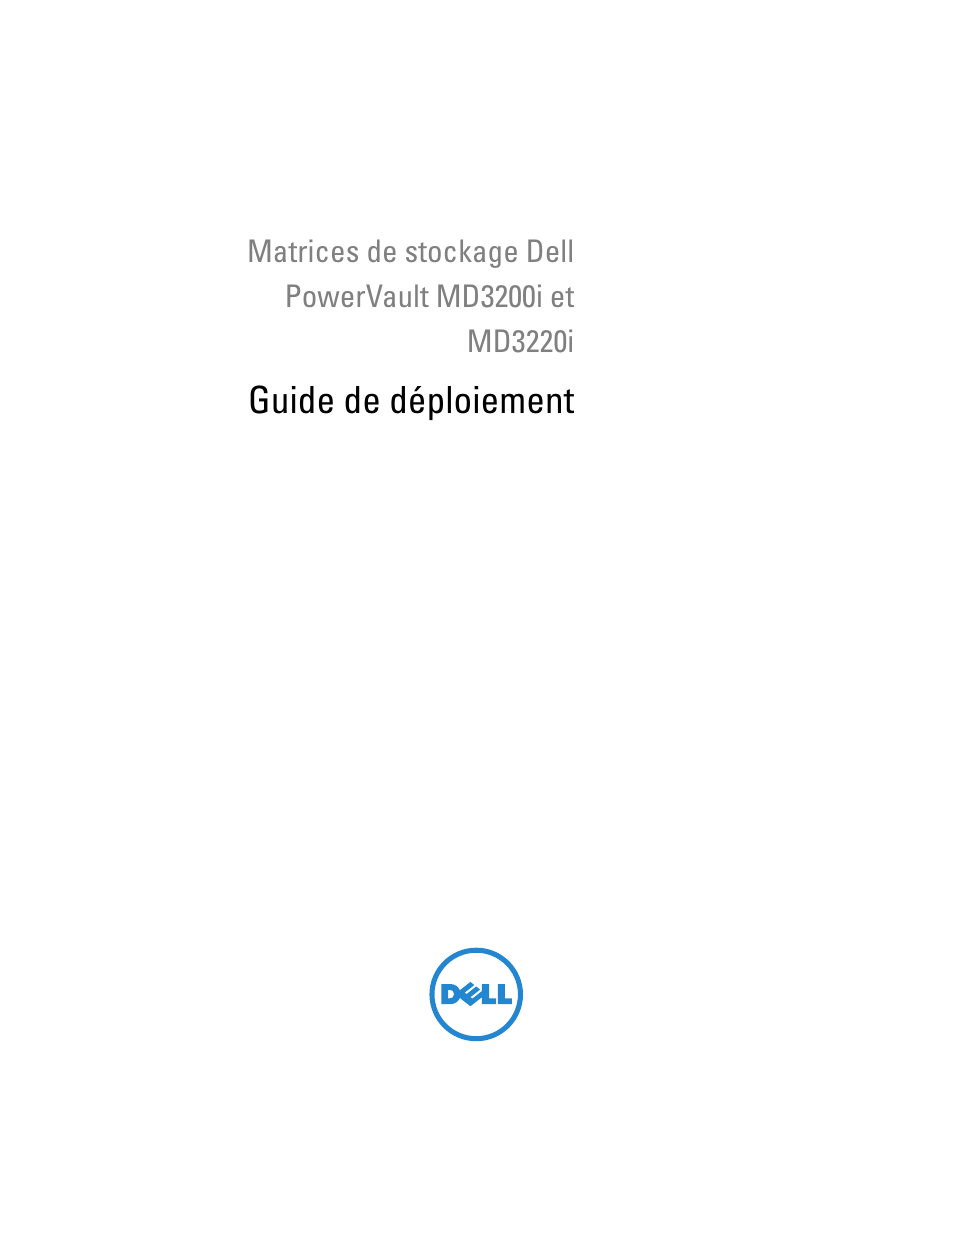 Dell PowerVault MD3220i Manuel d'utilisation | Pages: 88